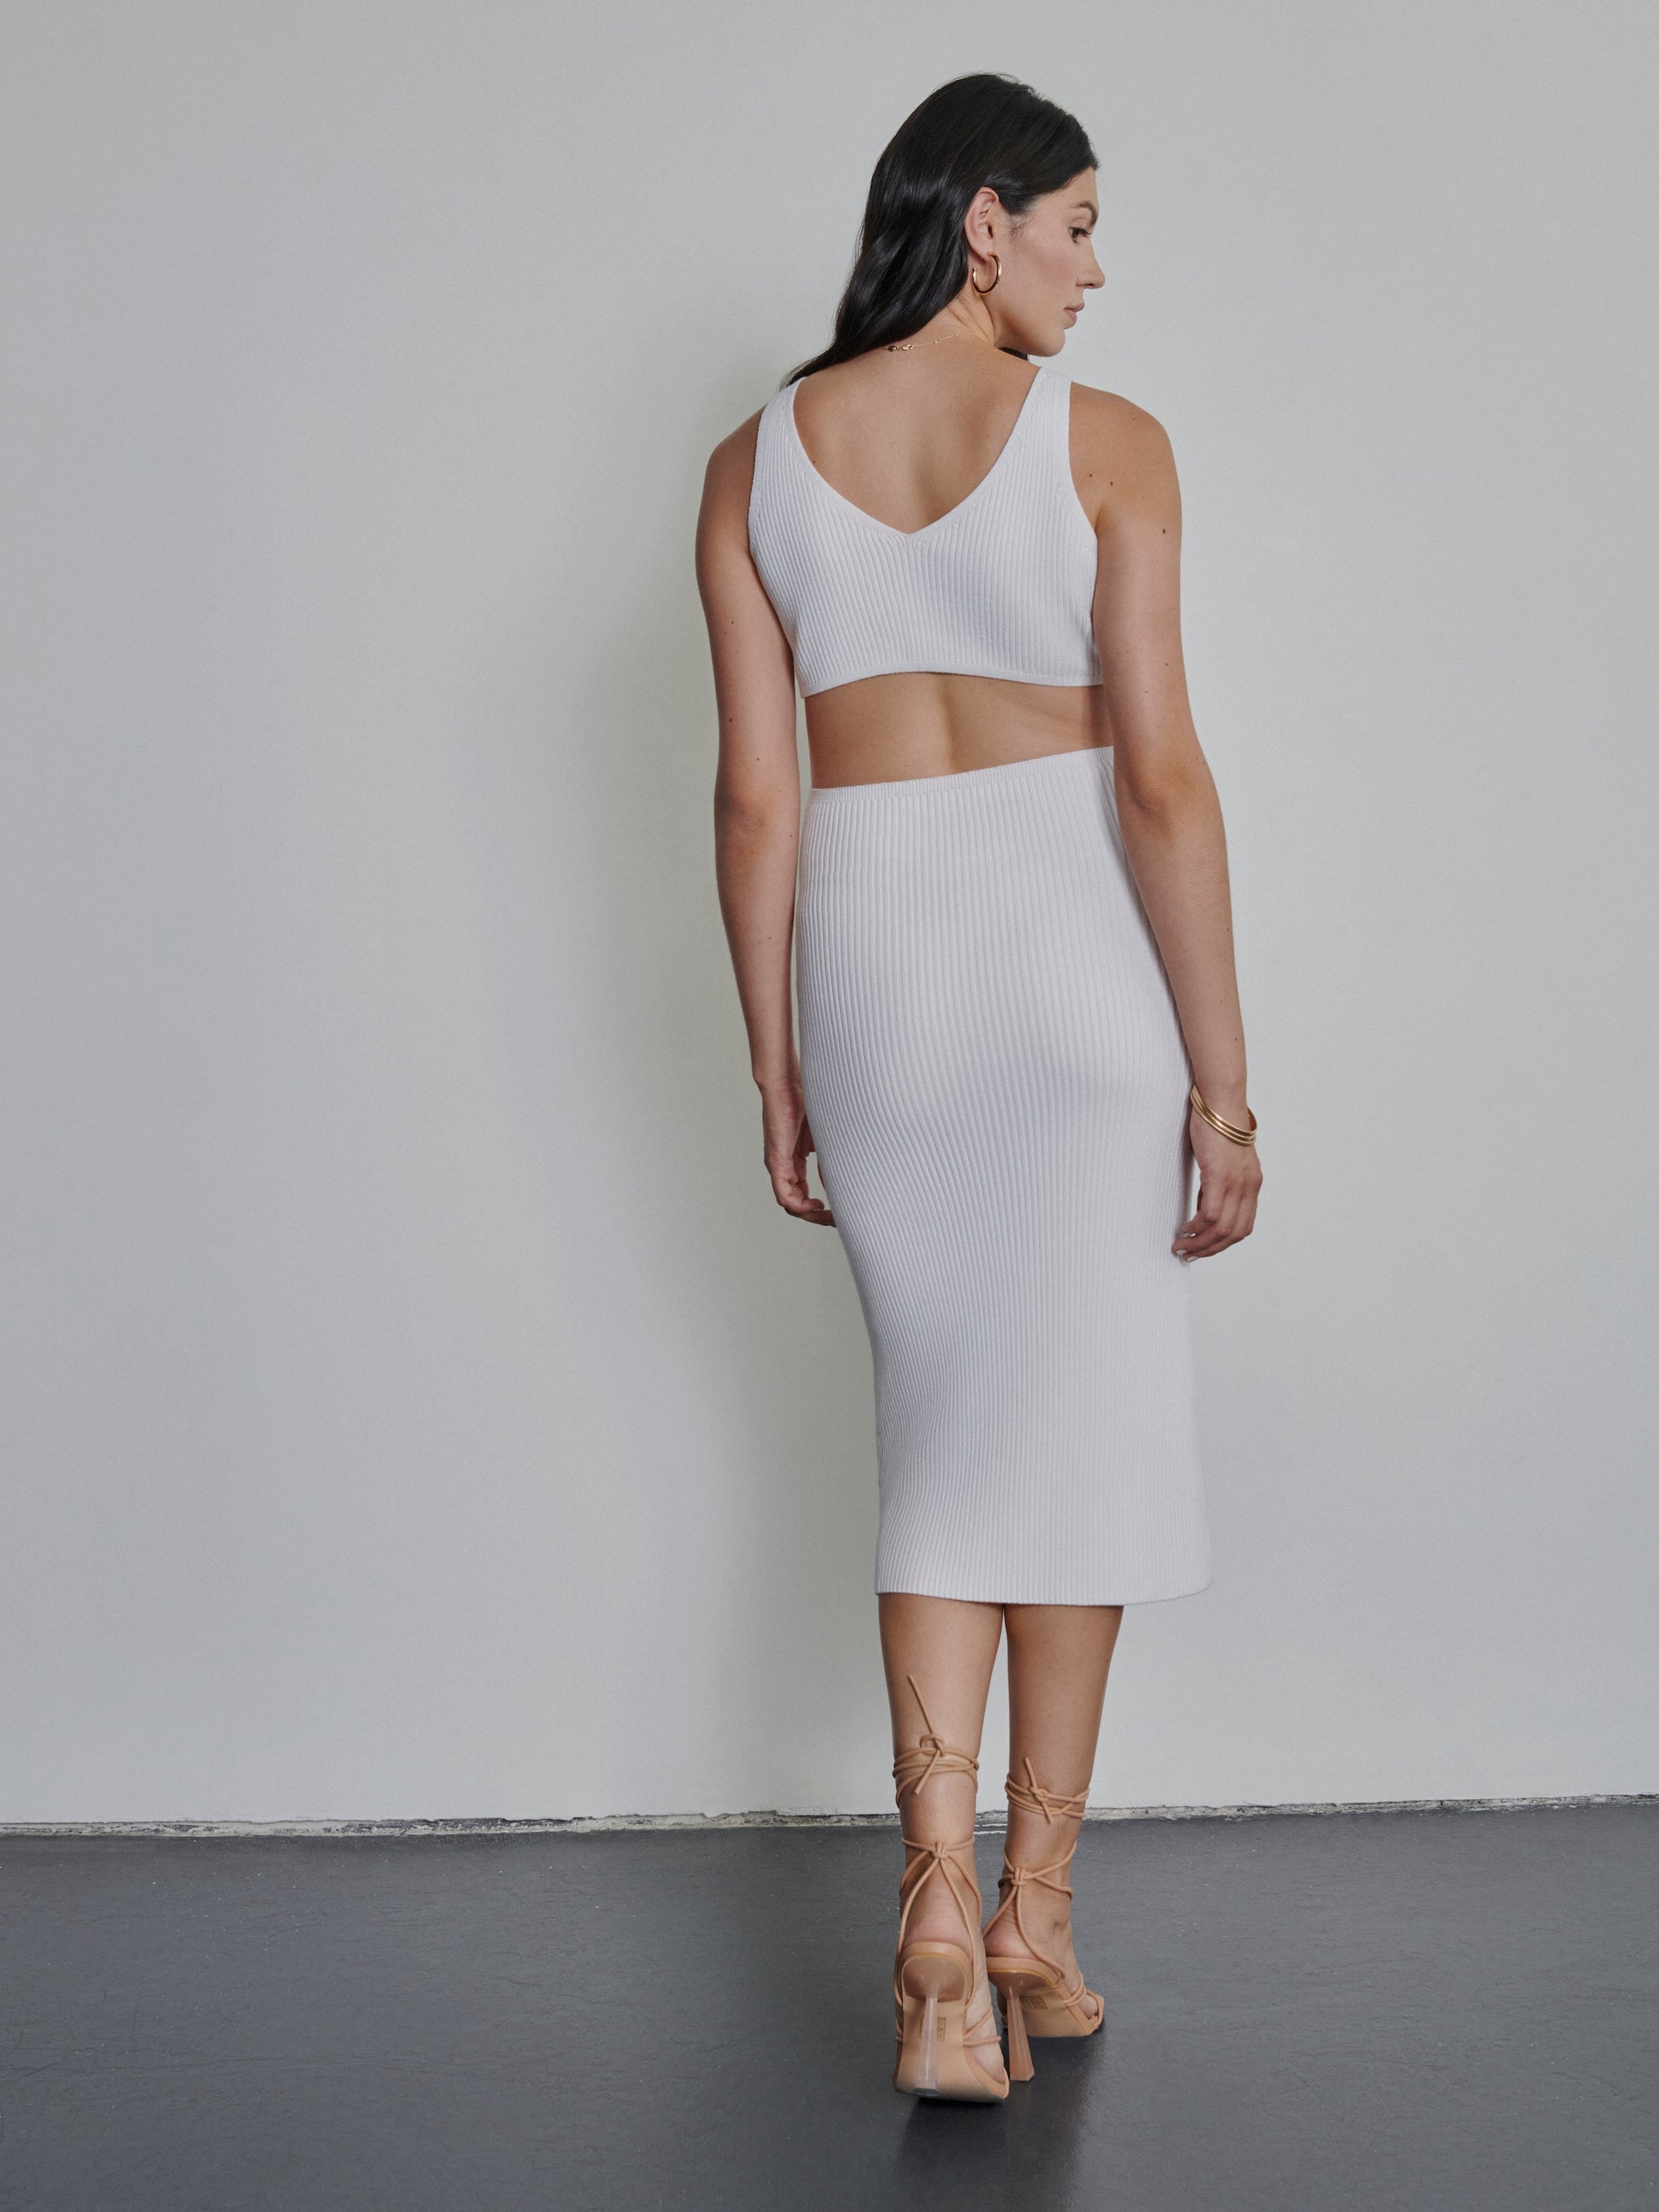 BREEZY SUMMER - Weißes Midi-Kleid mit Cut-outs - Kleider-9•BORROUGHS